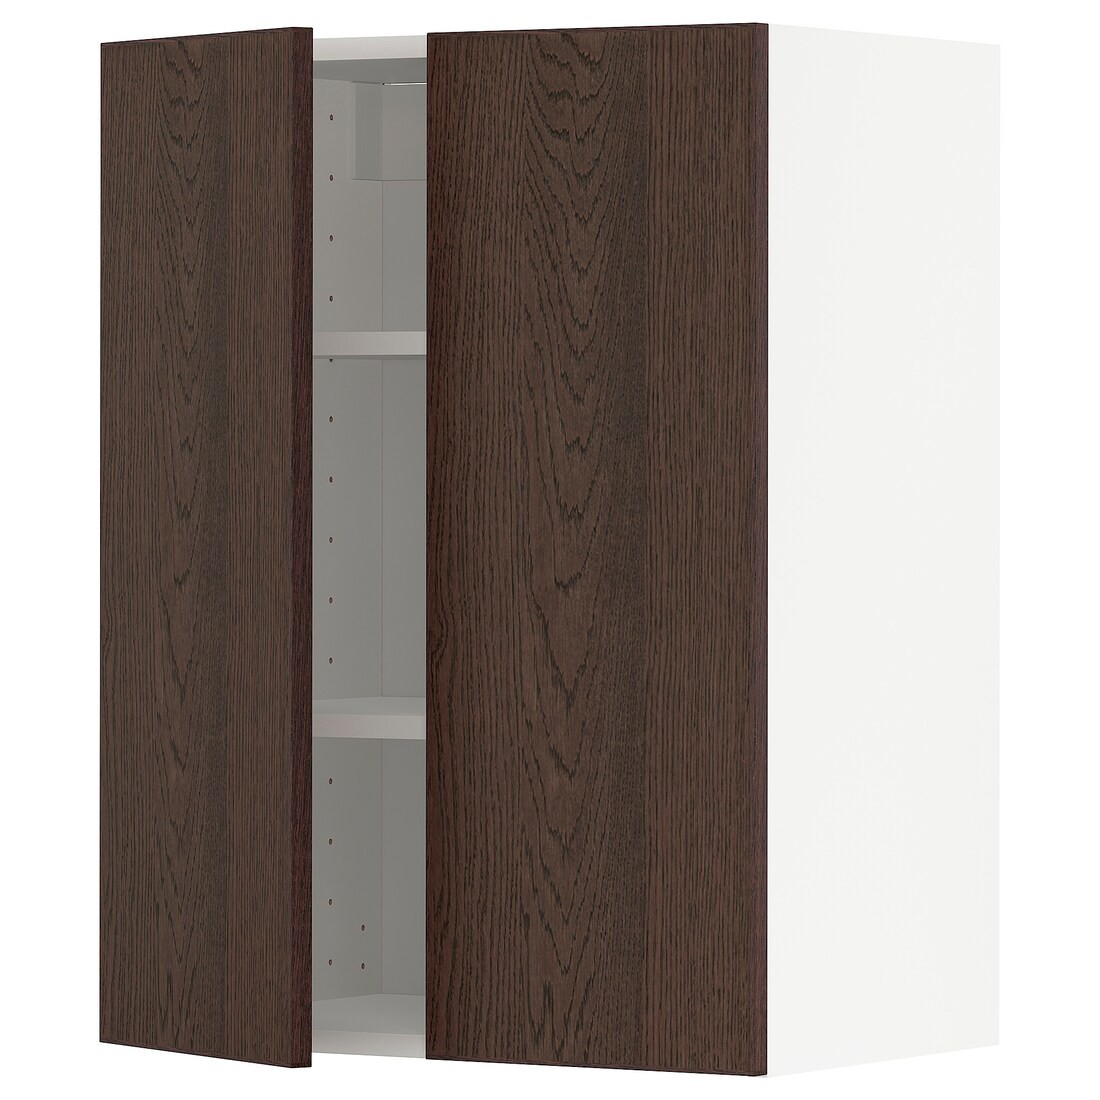 METOD МЕТОД Навесной шкаф с полками / 2 дверцы, белый / Sinarp коричневый, 60x80 см